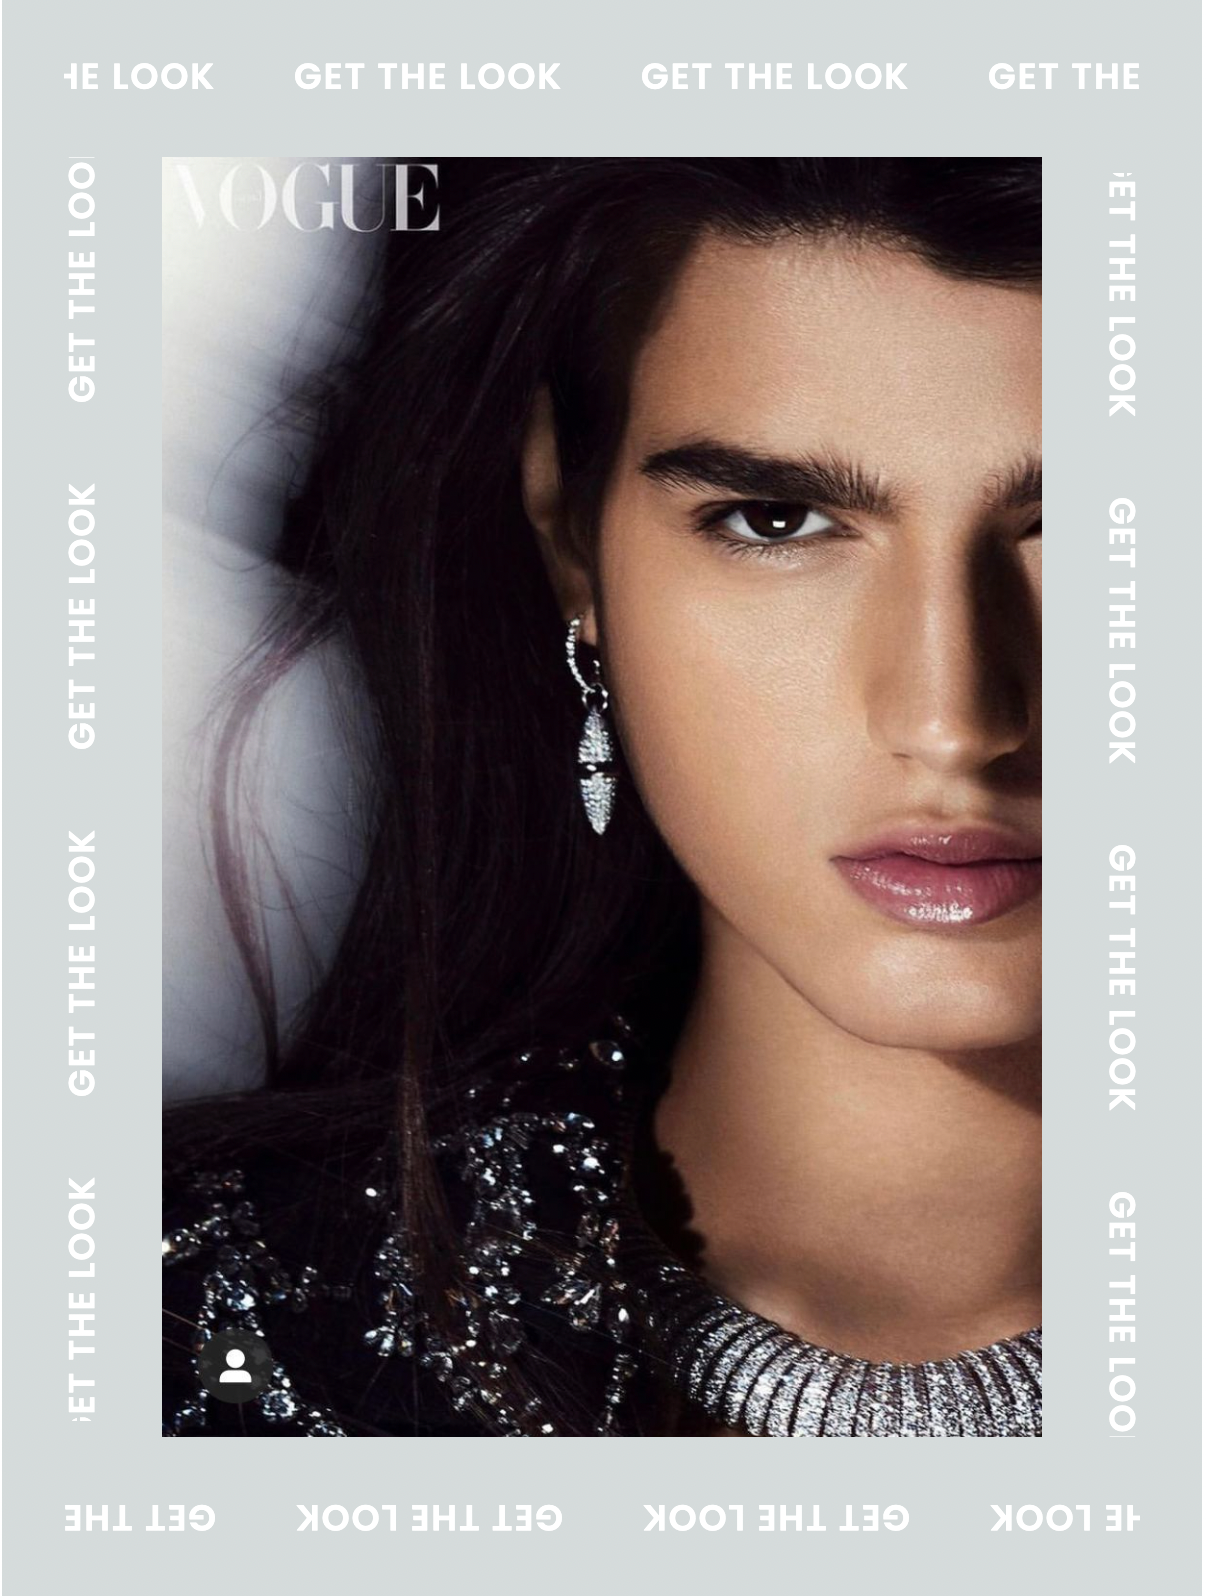 Get the Look: Adam De Cruz's beauty look for Vogue Arabia